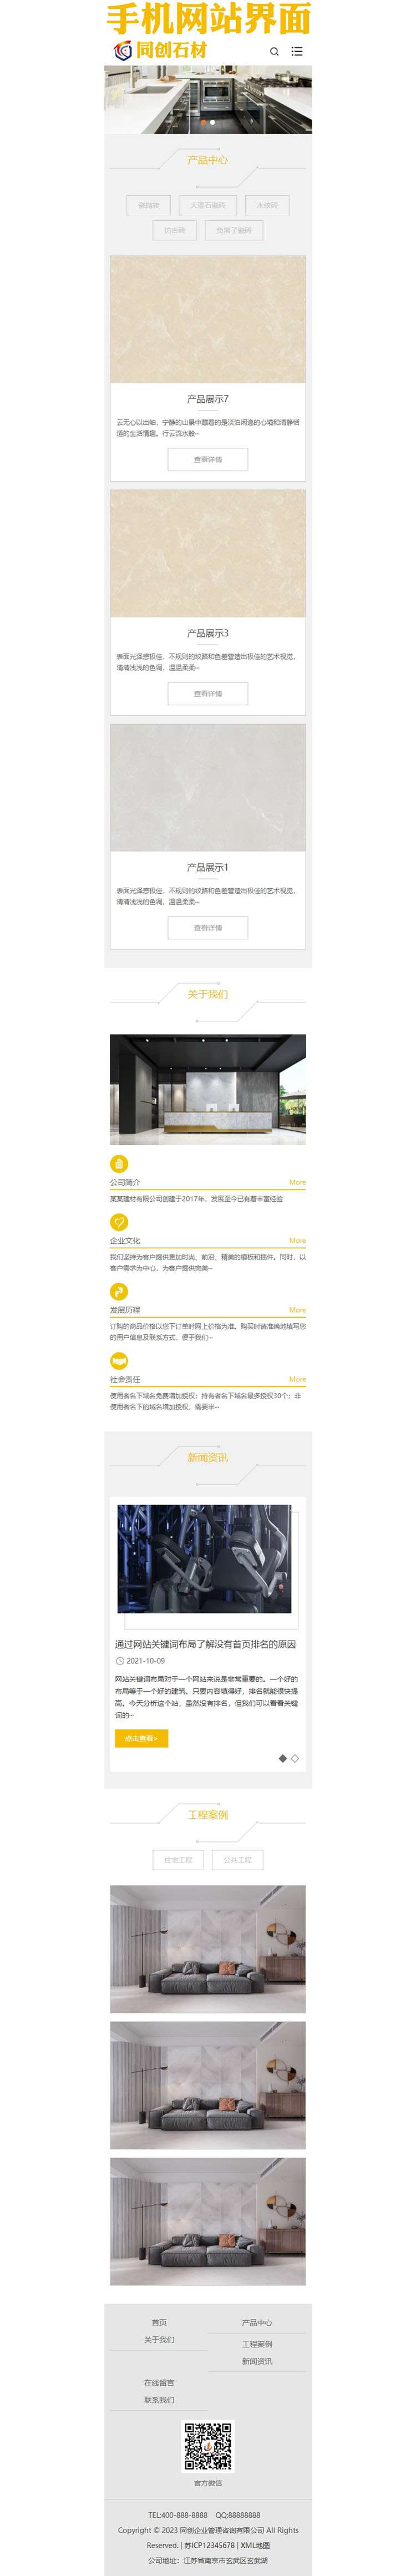 响应式瓷砖大理石建材网站制作程序模板-XX231-3